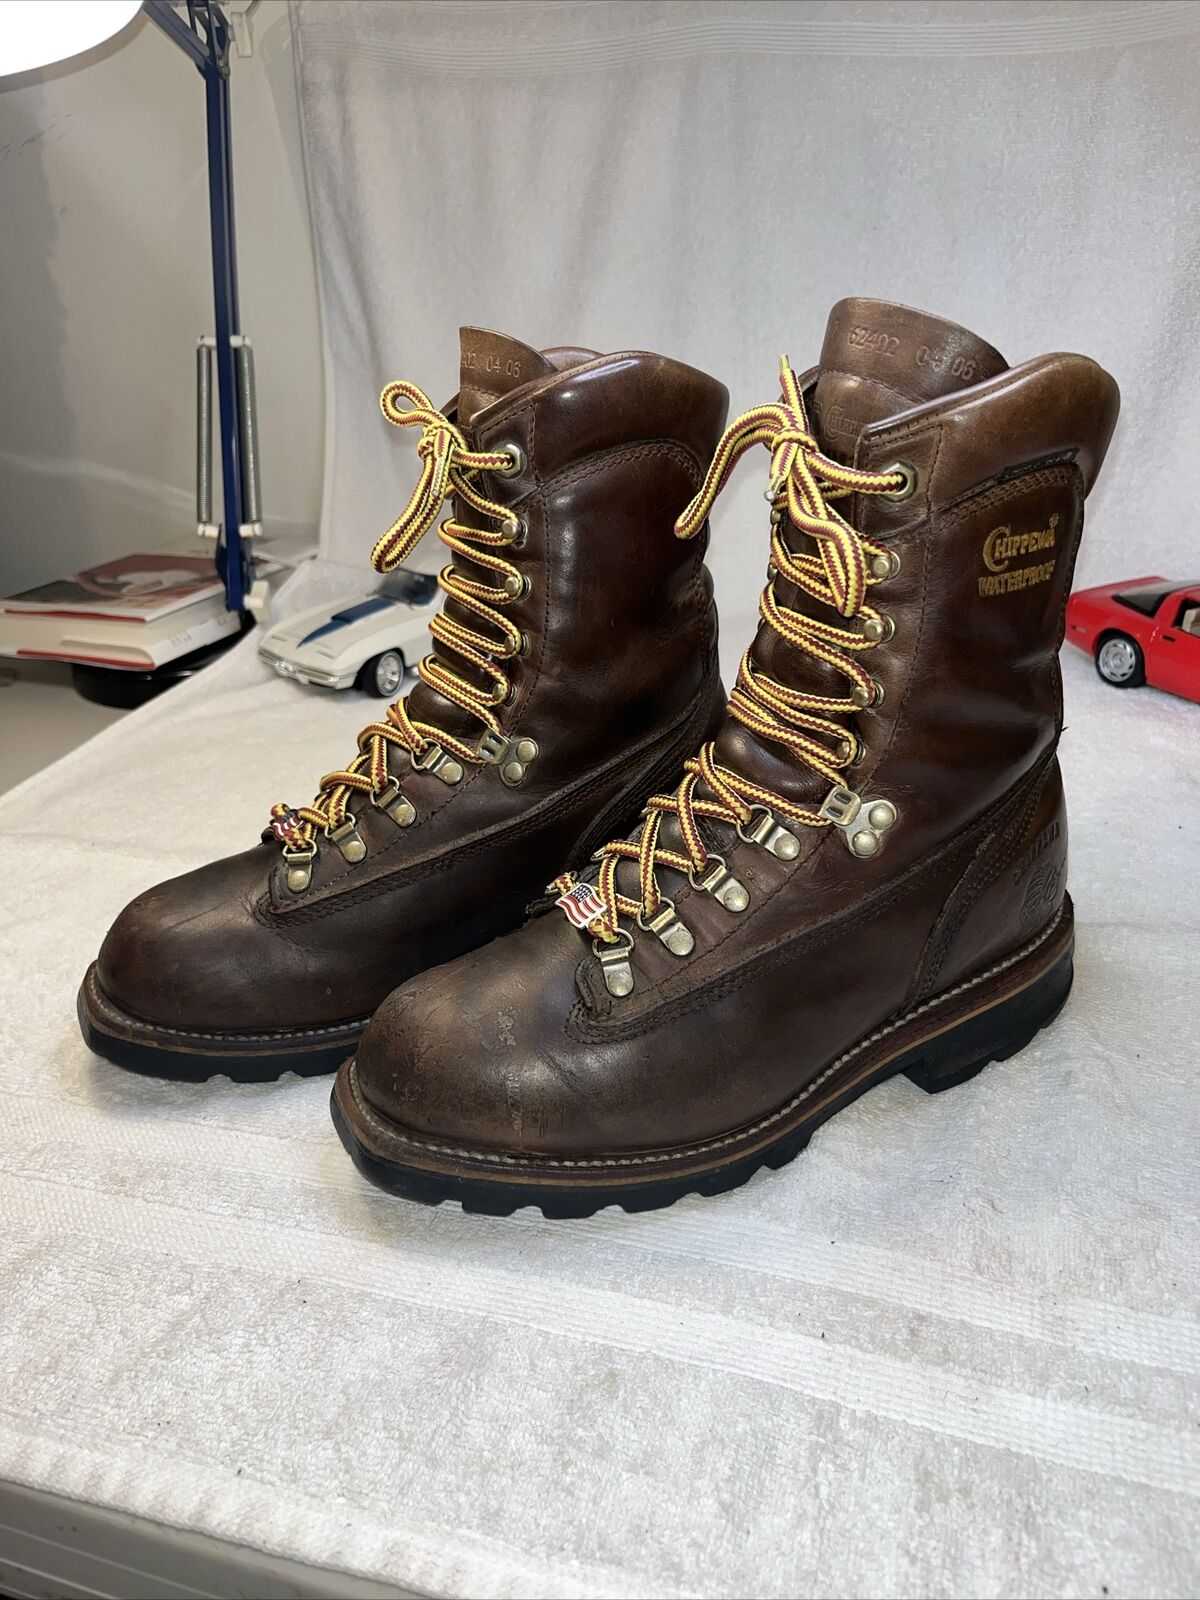 Chippewa boots size 7E Schierling Wool - image 5